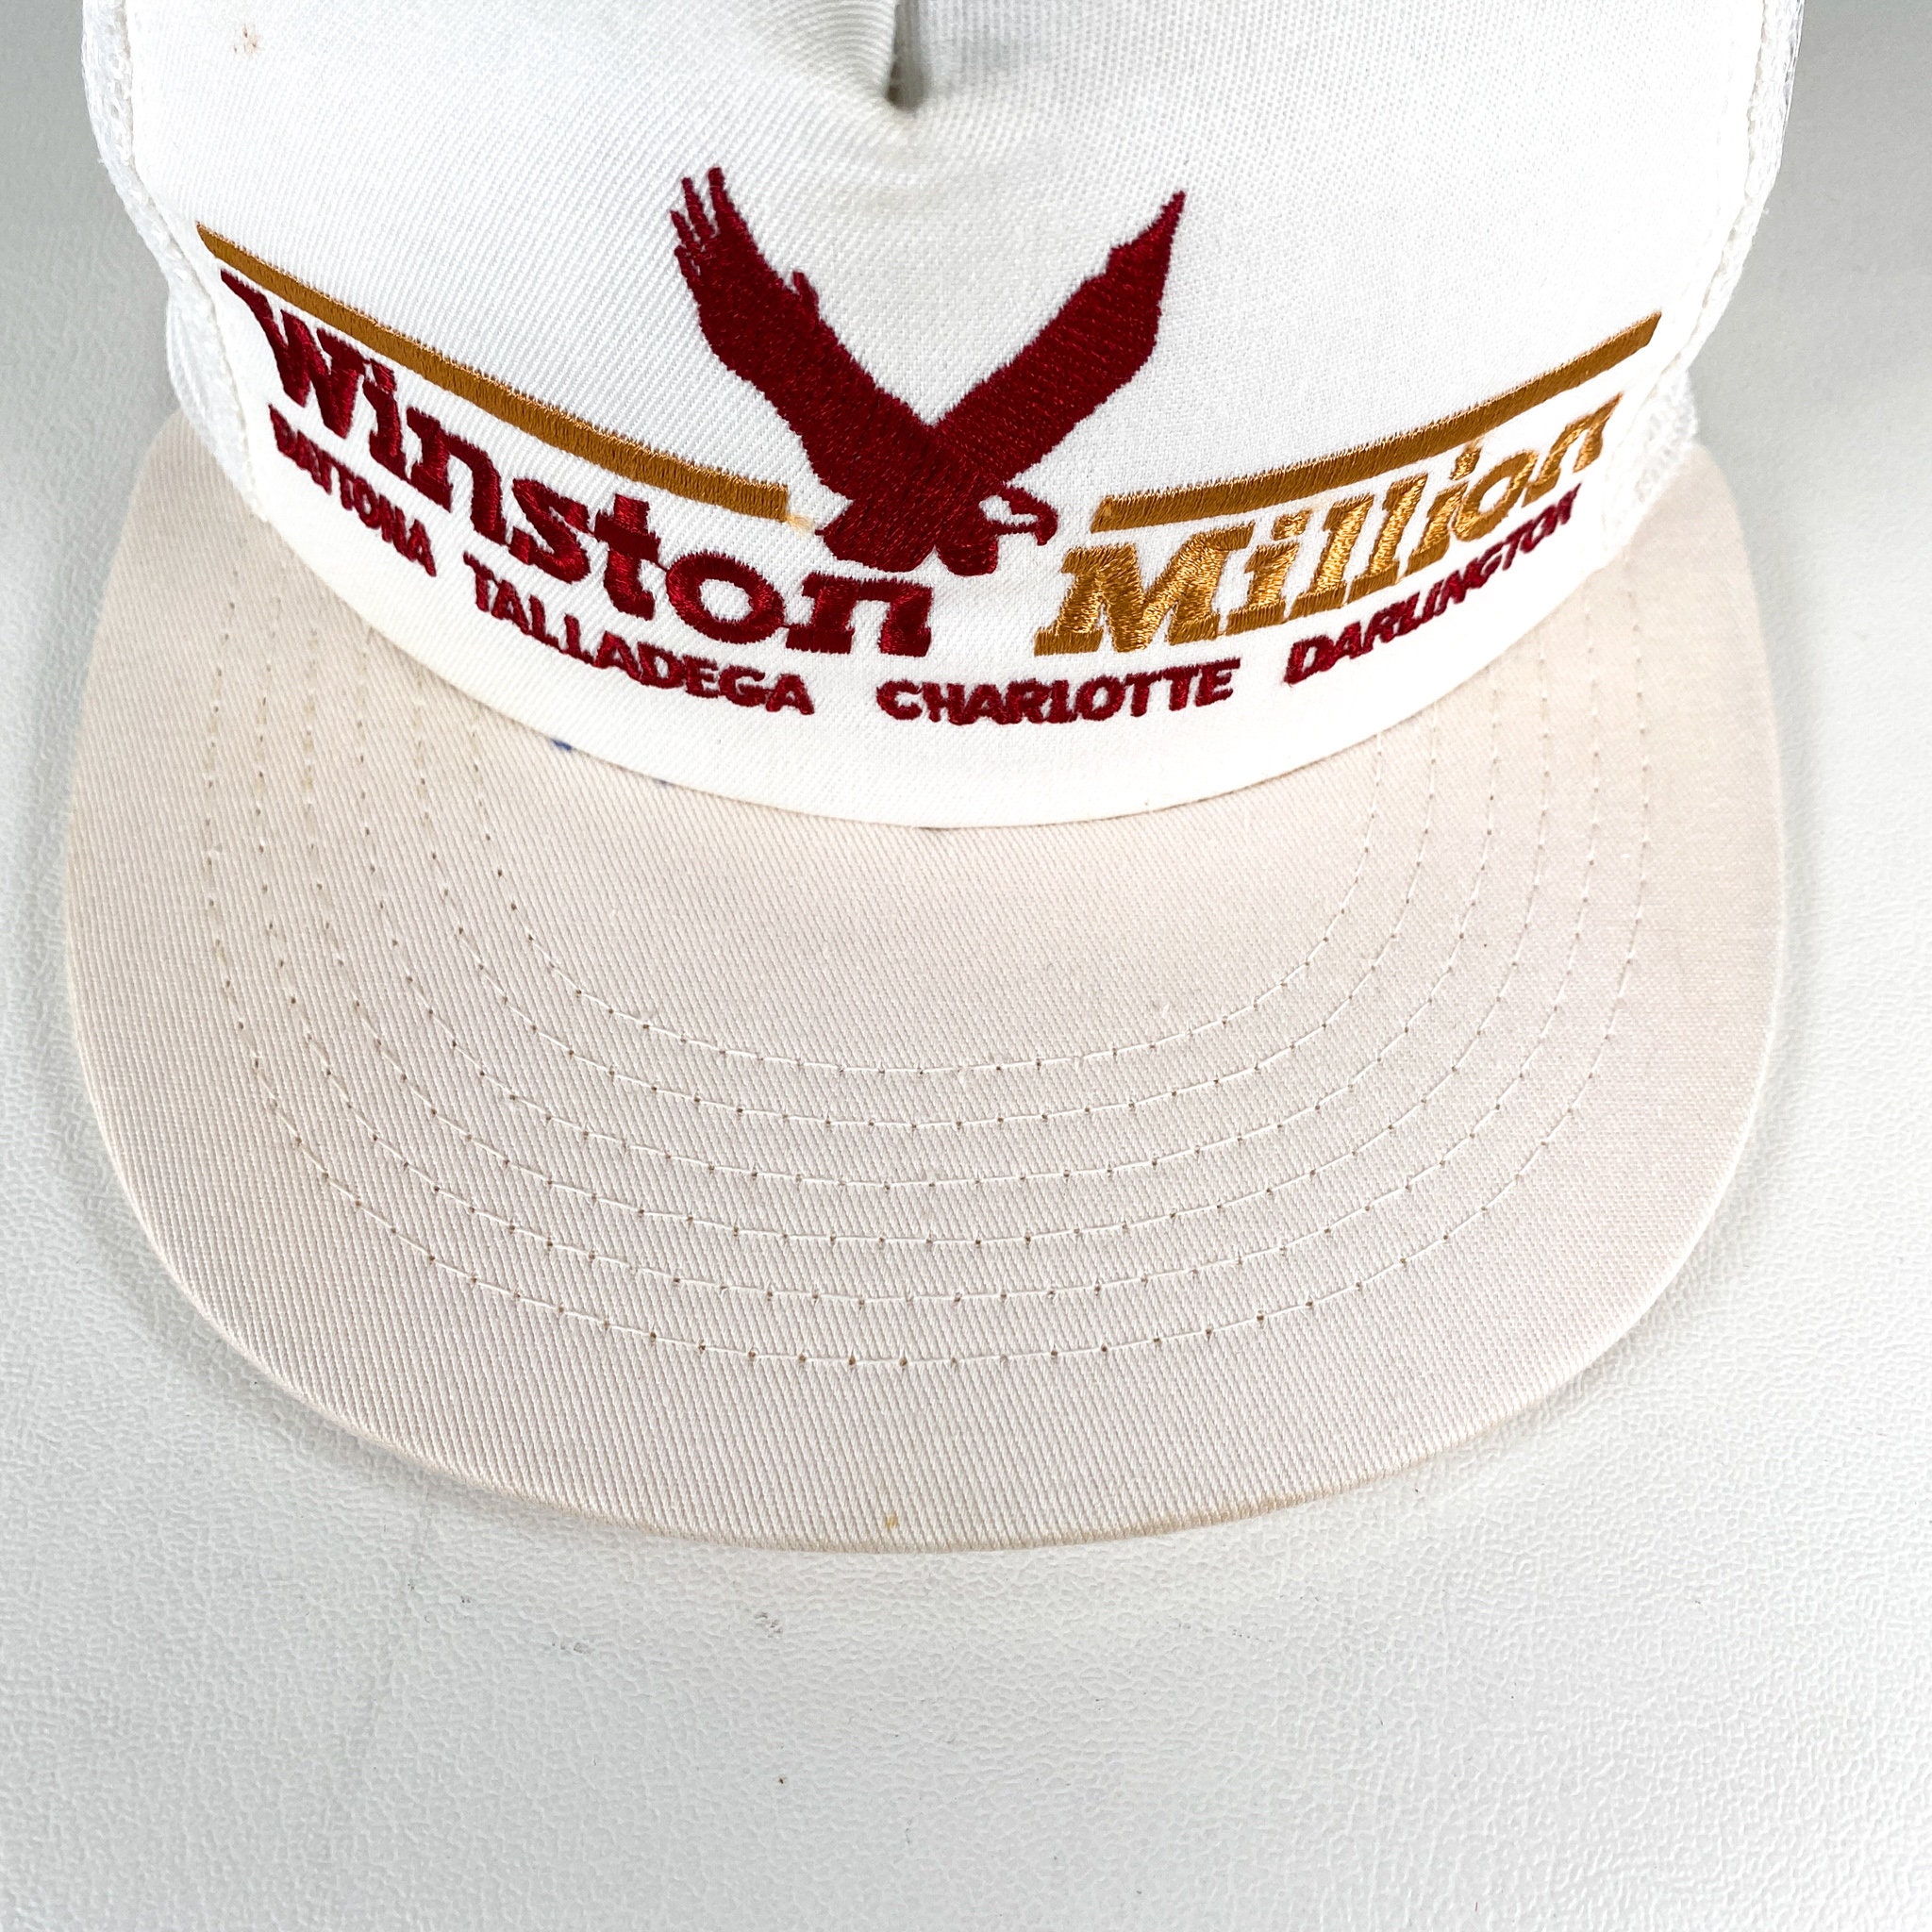 Vintage Winston Million hat 80s winston million trucker hat made in usa winston racing white trucker daytona talladega charlotte darlington